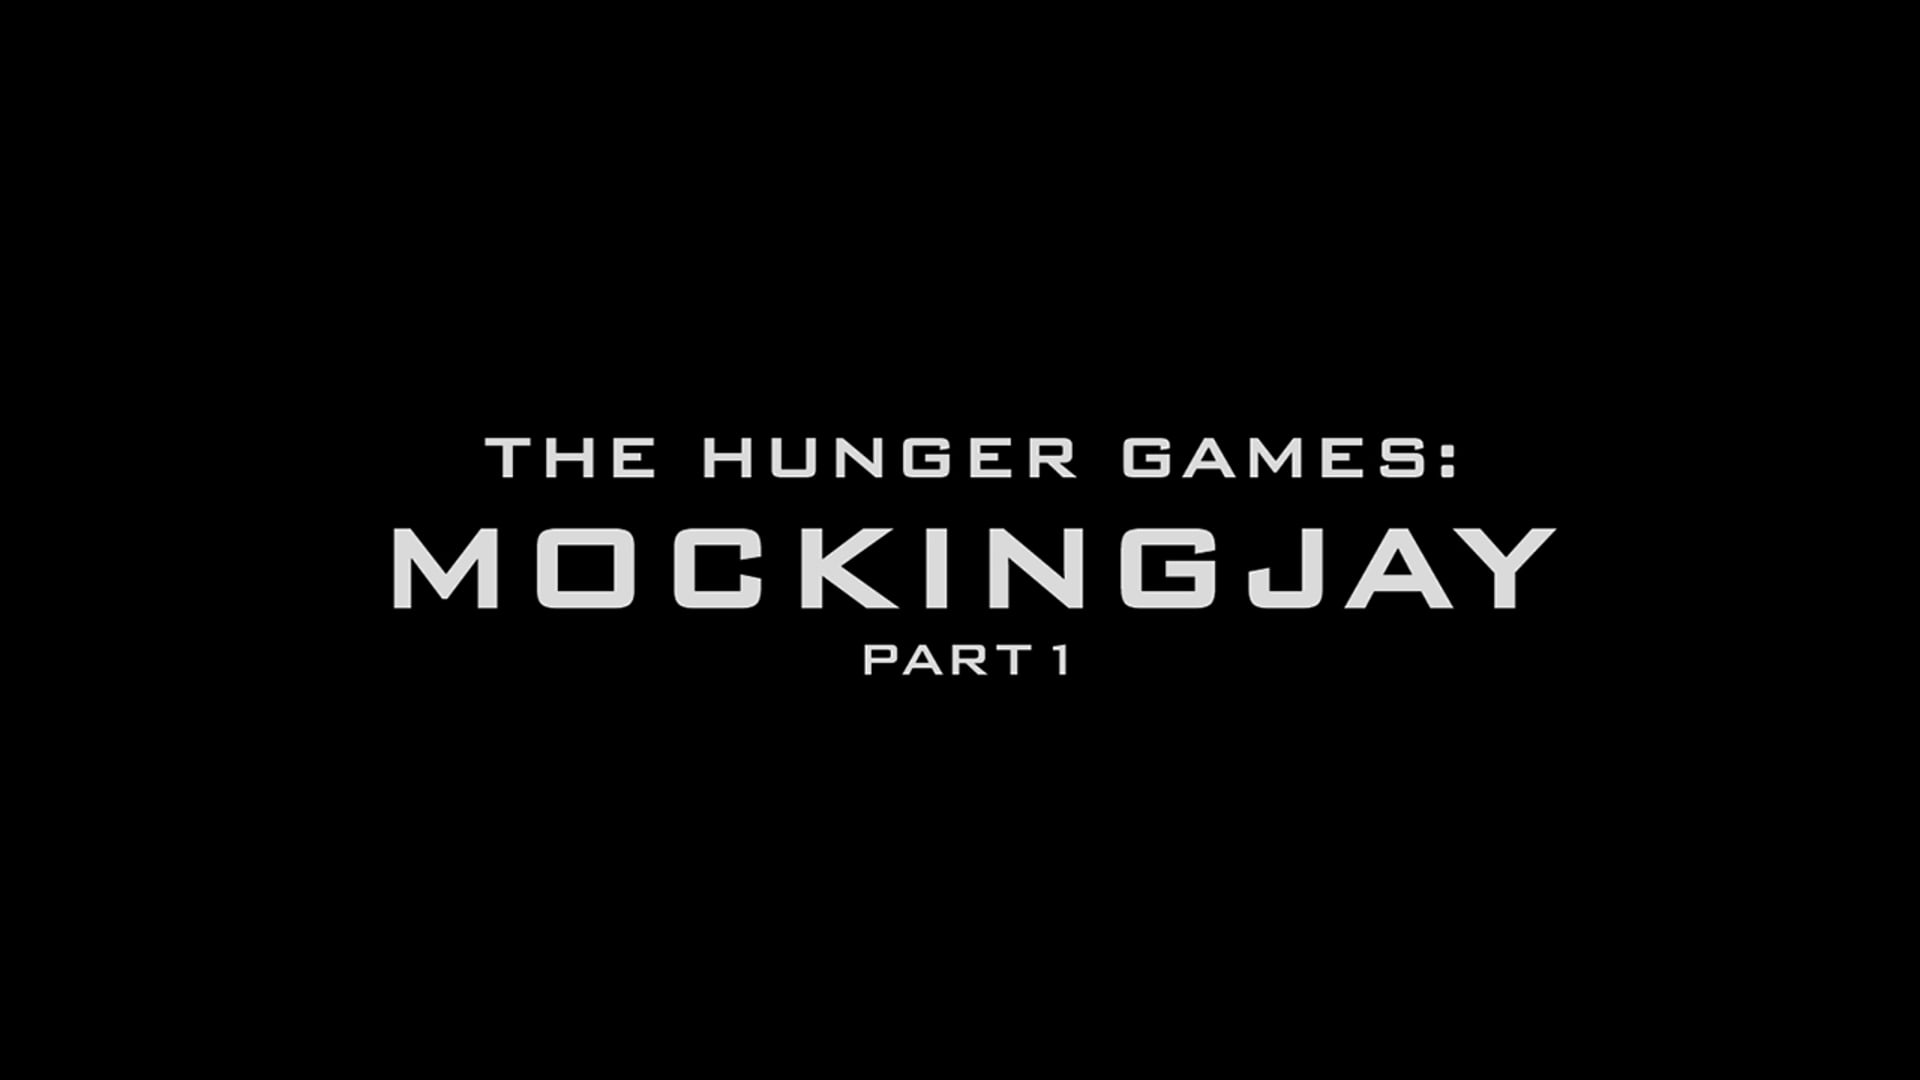 Hunger games: Mocking Jay Part 1